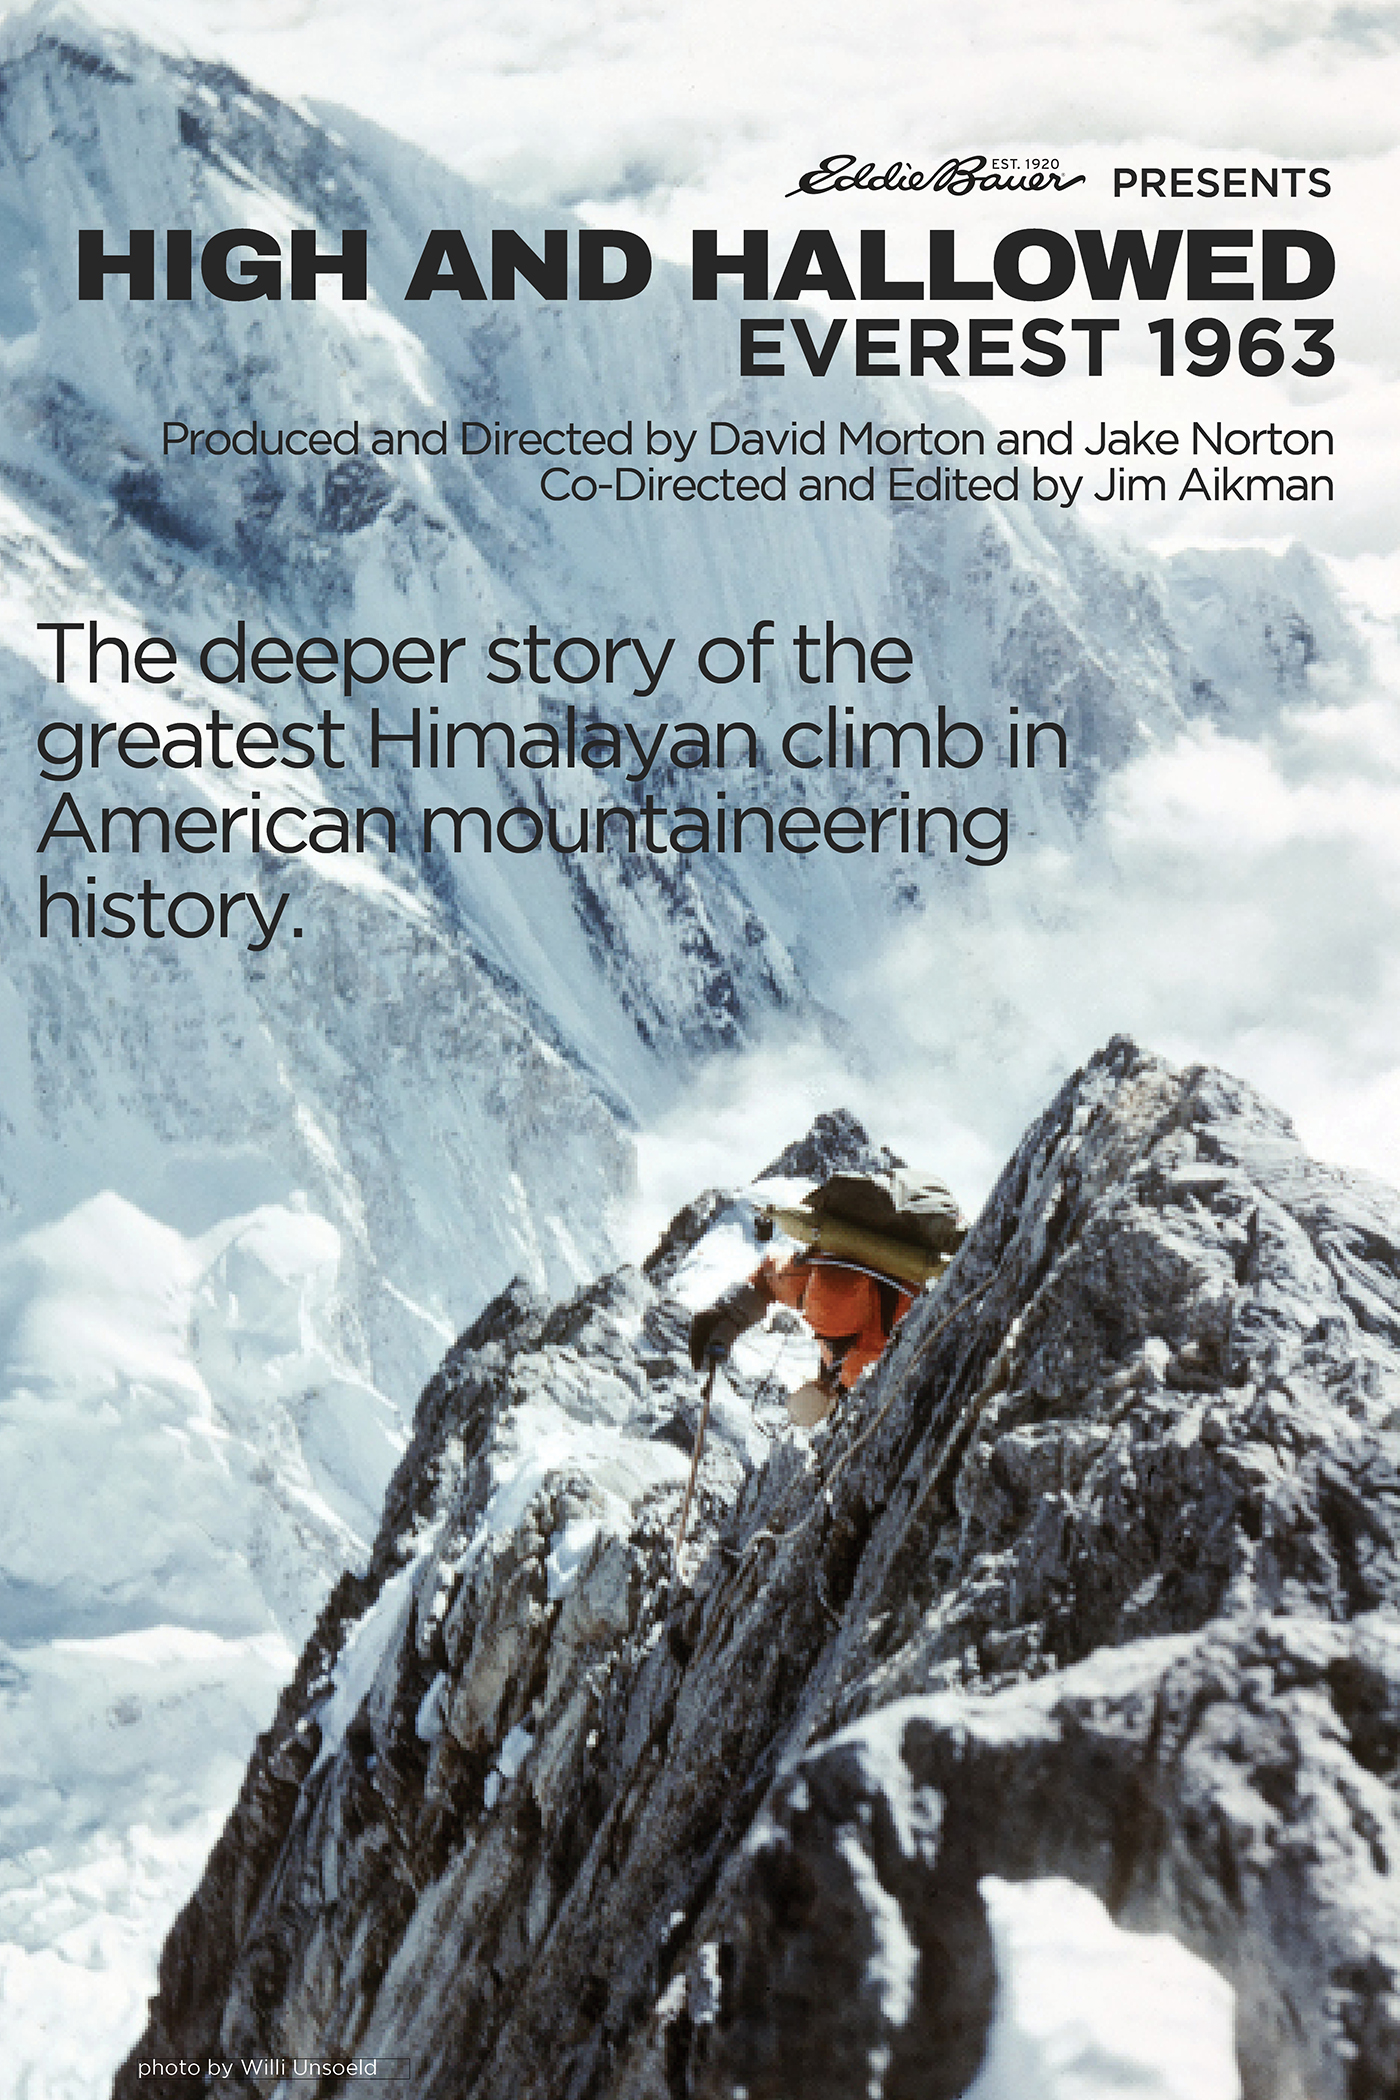 High and Hallowed: Everest 1963 (2013) Screenshot 1